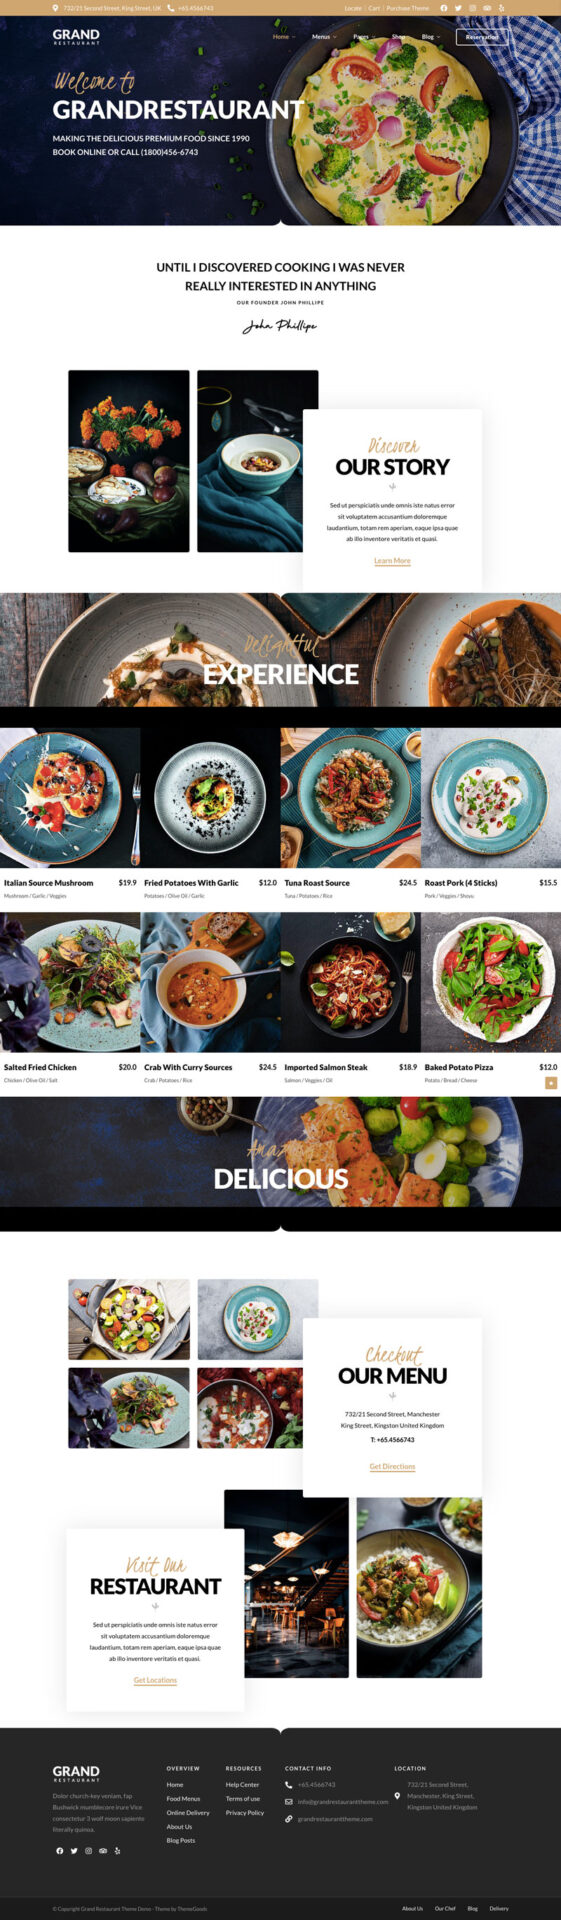 Wordpress template for restaurant